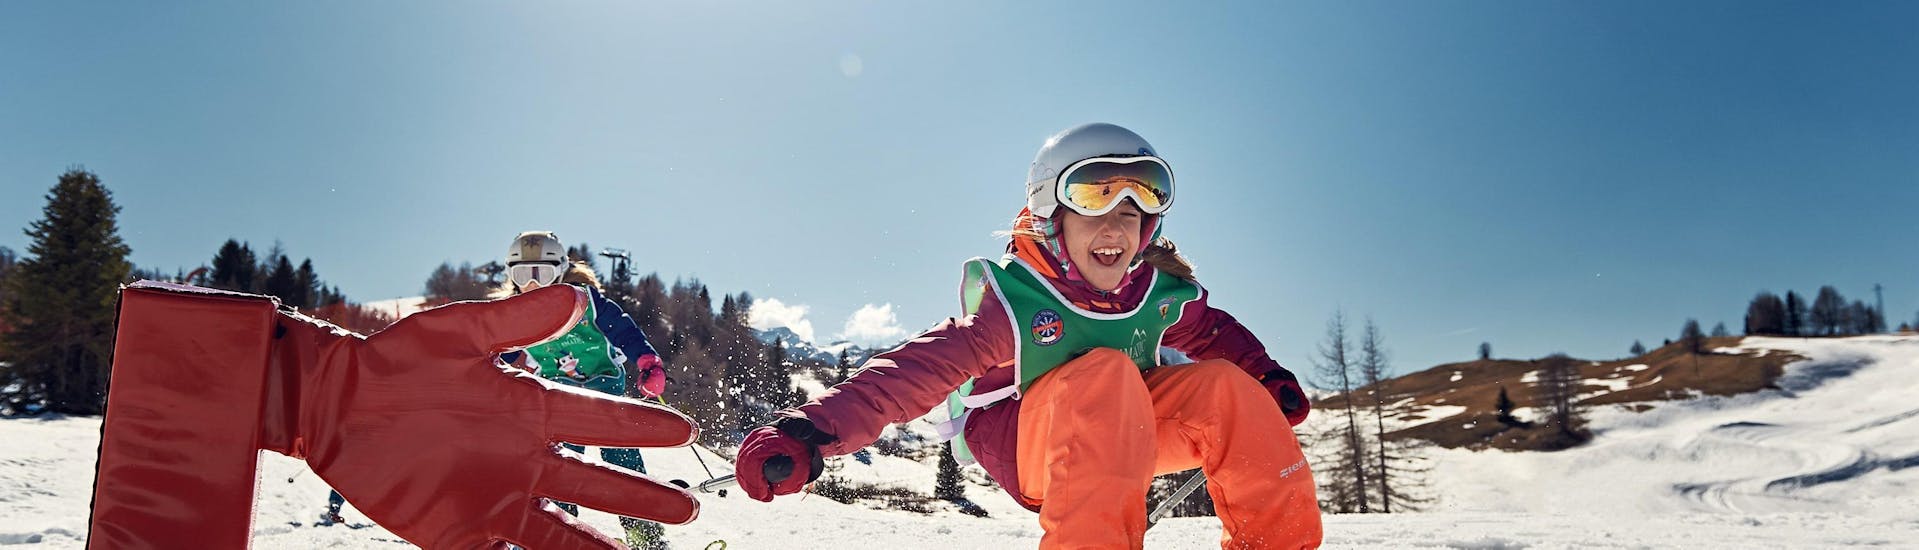 Dammi il cinque sulle piste dell'Armentarola durante una delle lezioni di sci per bambini (4-12 anni) per tutti i livelli.